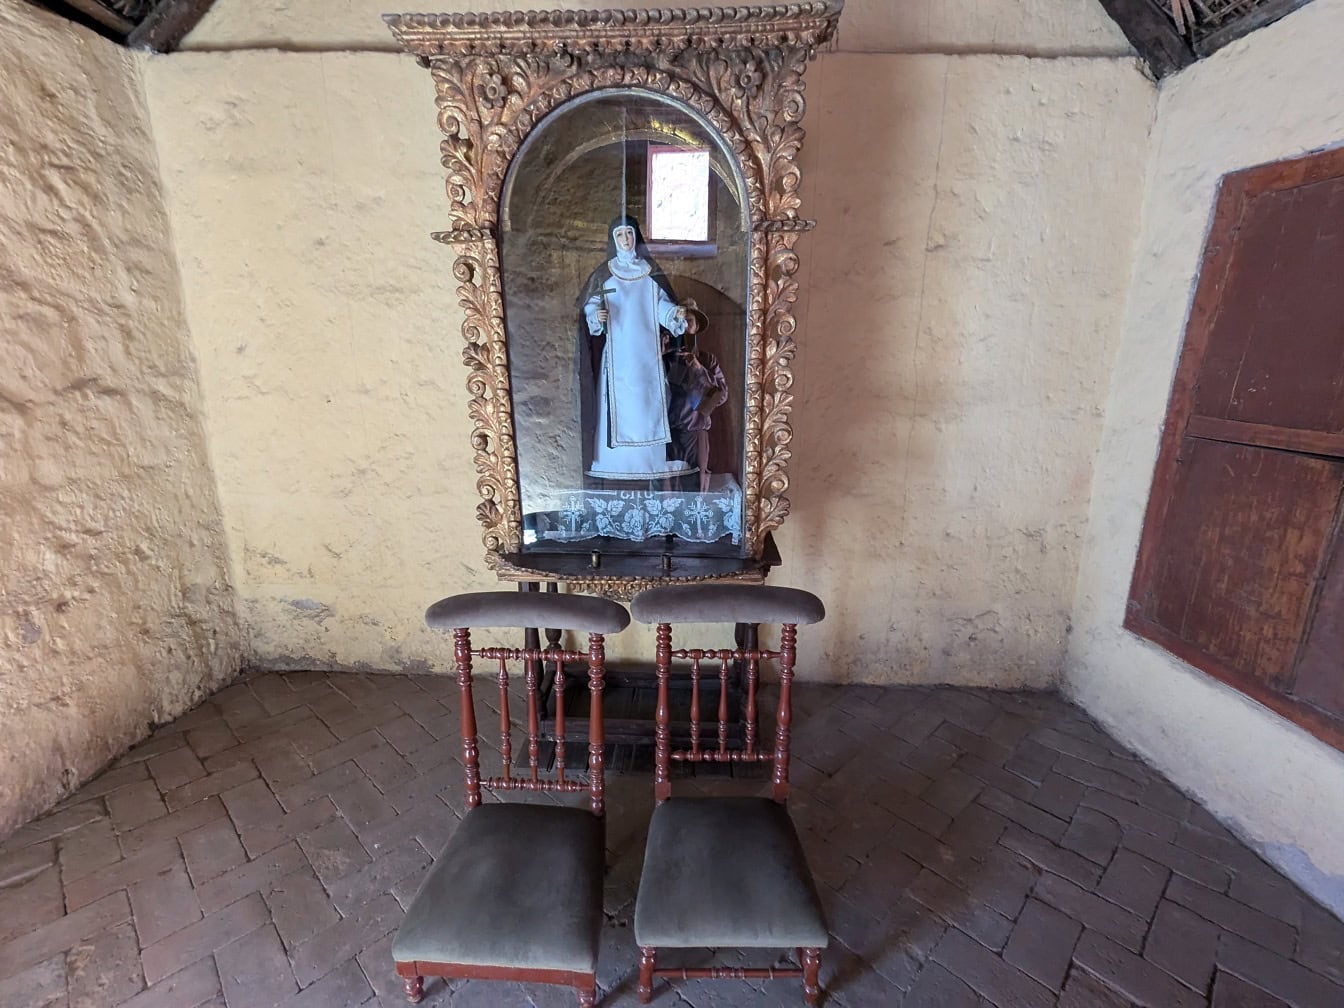 รูปปั้นแม่ชีในห้องที่มีเก้าอี้ในอารามคาทอลิกในเปรู